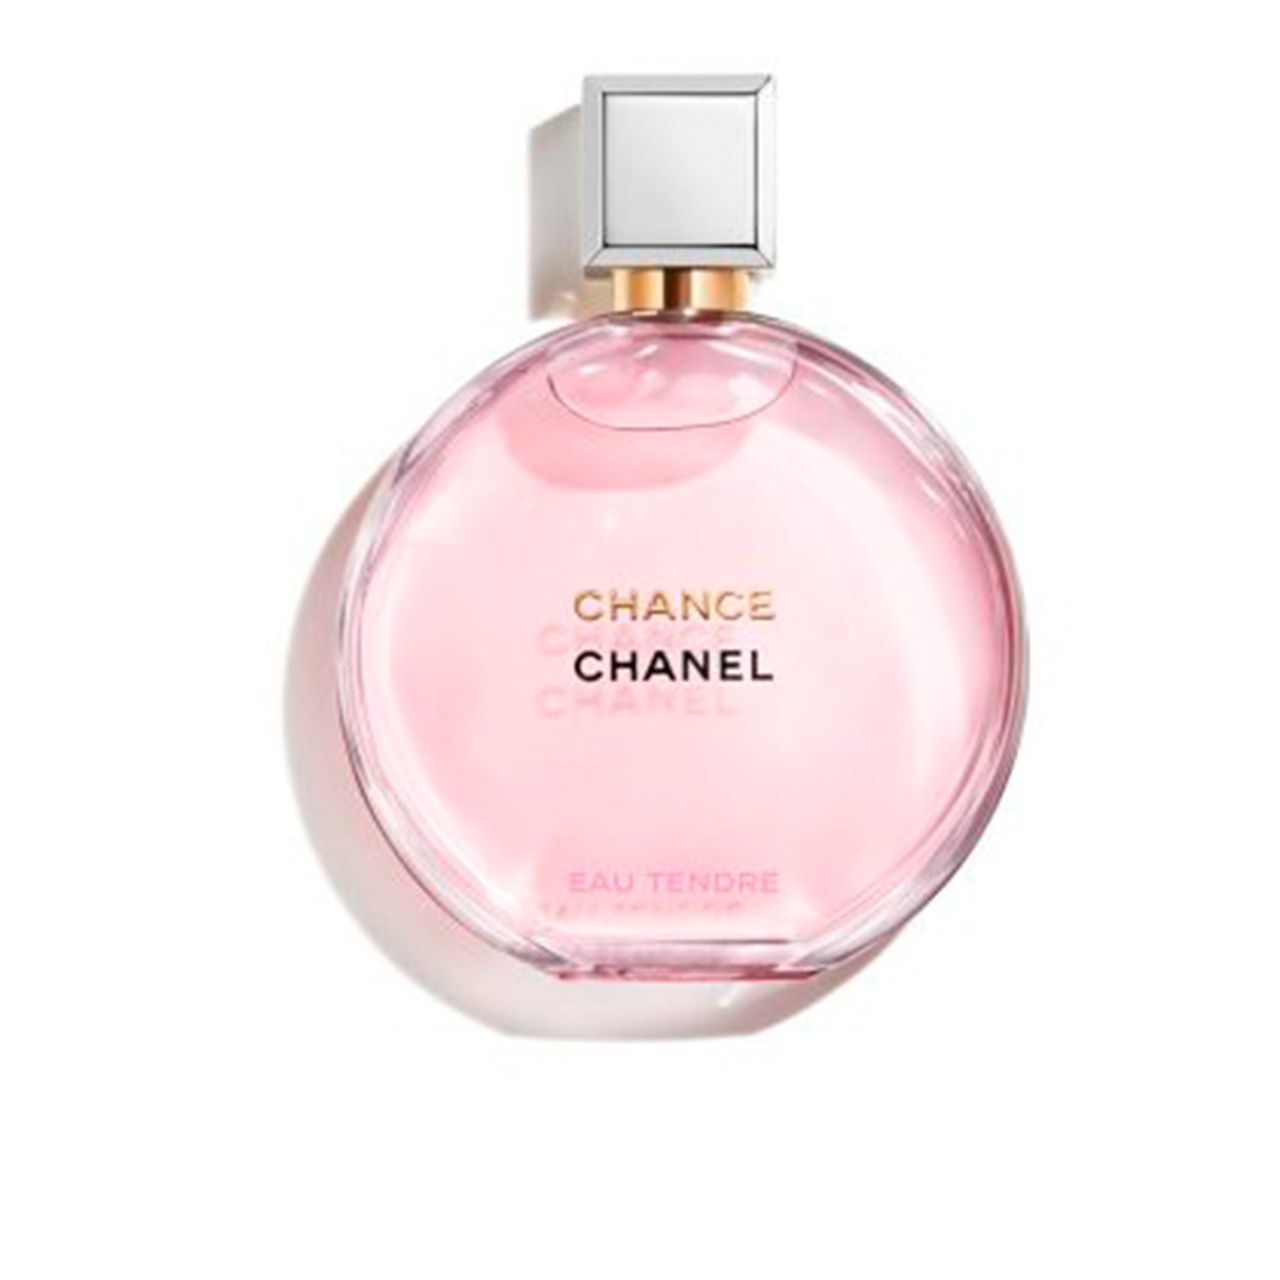 Chance Eau Tendre Chanel Eau de Parfum Perfume Feminino